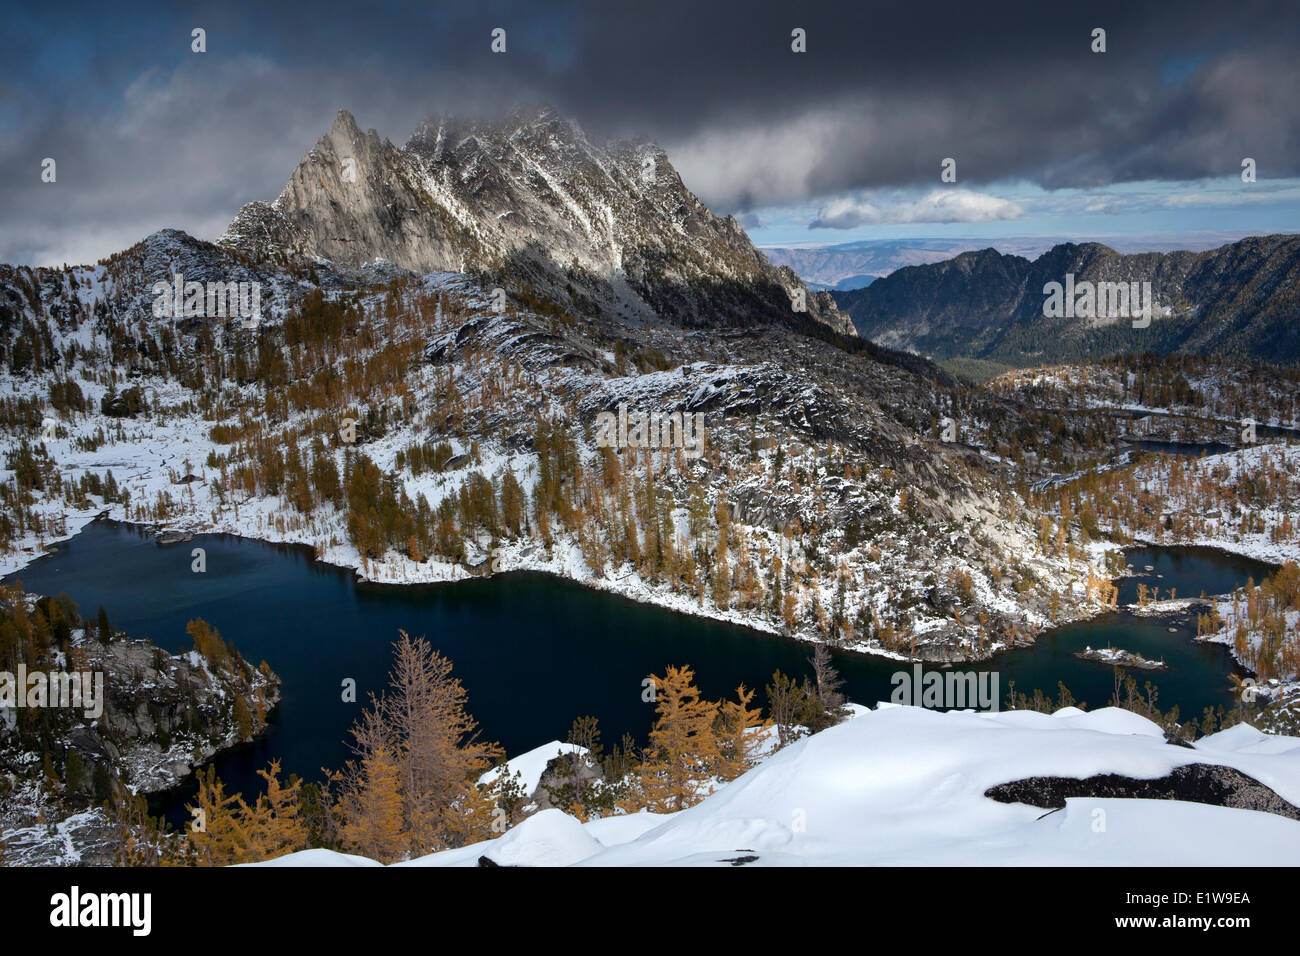 Perfektion-See und dem Prusik Peak, Verzauberungen Becken, Alpenseen Wildnis, US-Bundesstaat Washington, Vereinigte Staaten von Amerika Stockfoto